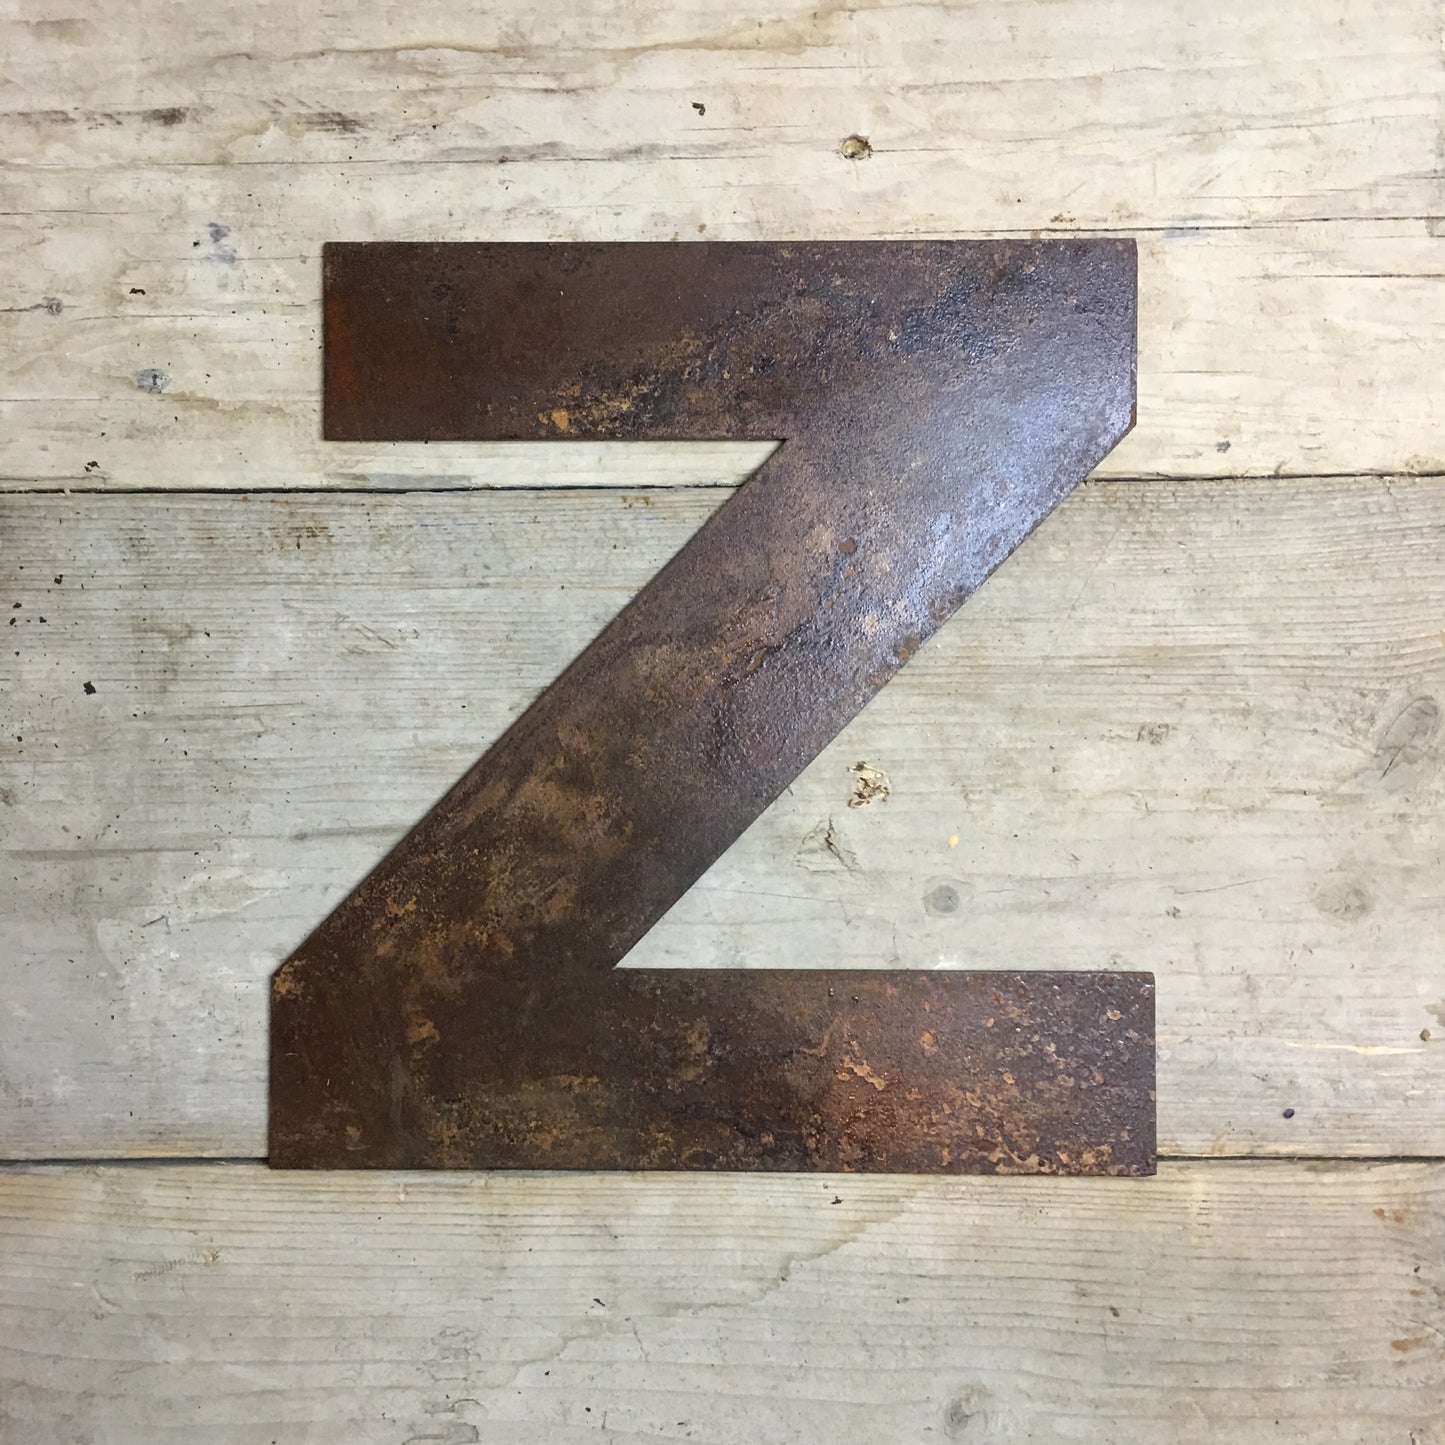 12" Rusty Fat Font Metal Letters A-Z 0-9.